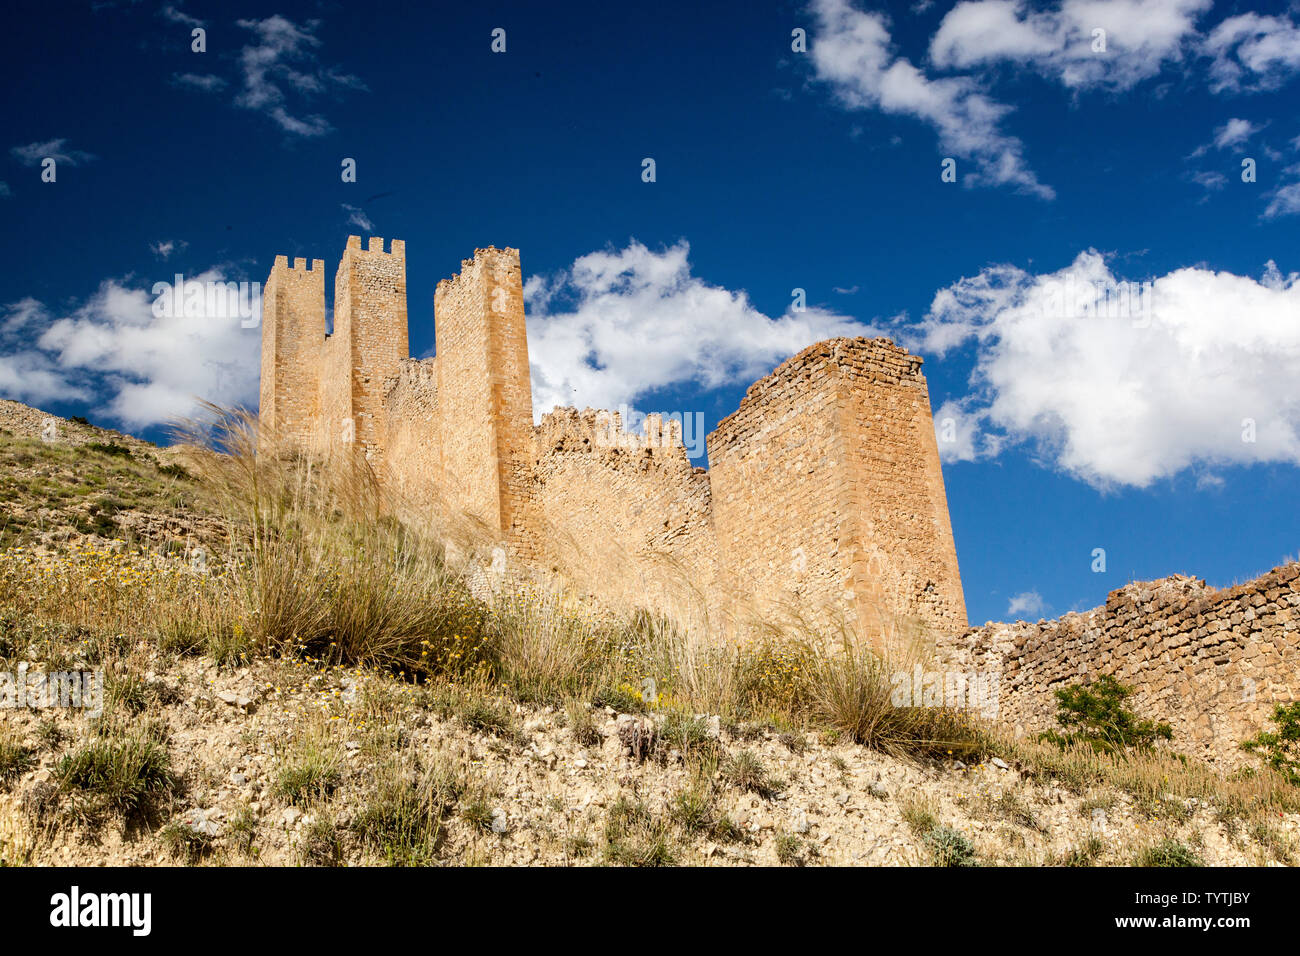 Vue sur la cité médiévale fortifiée / murs de ville dans la ville d'Albarracin mauresque espagnol dans les Montes Universales Aragon Espagne Banque D'Images